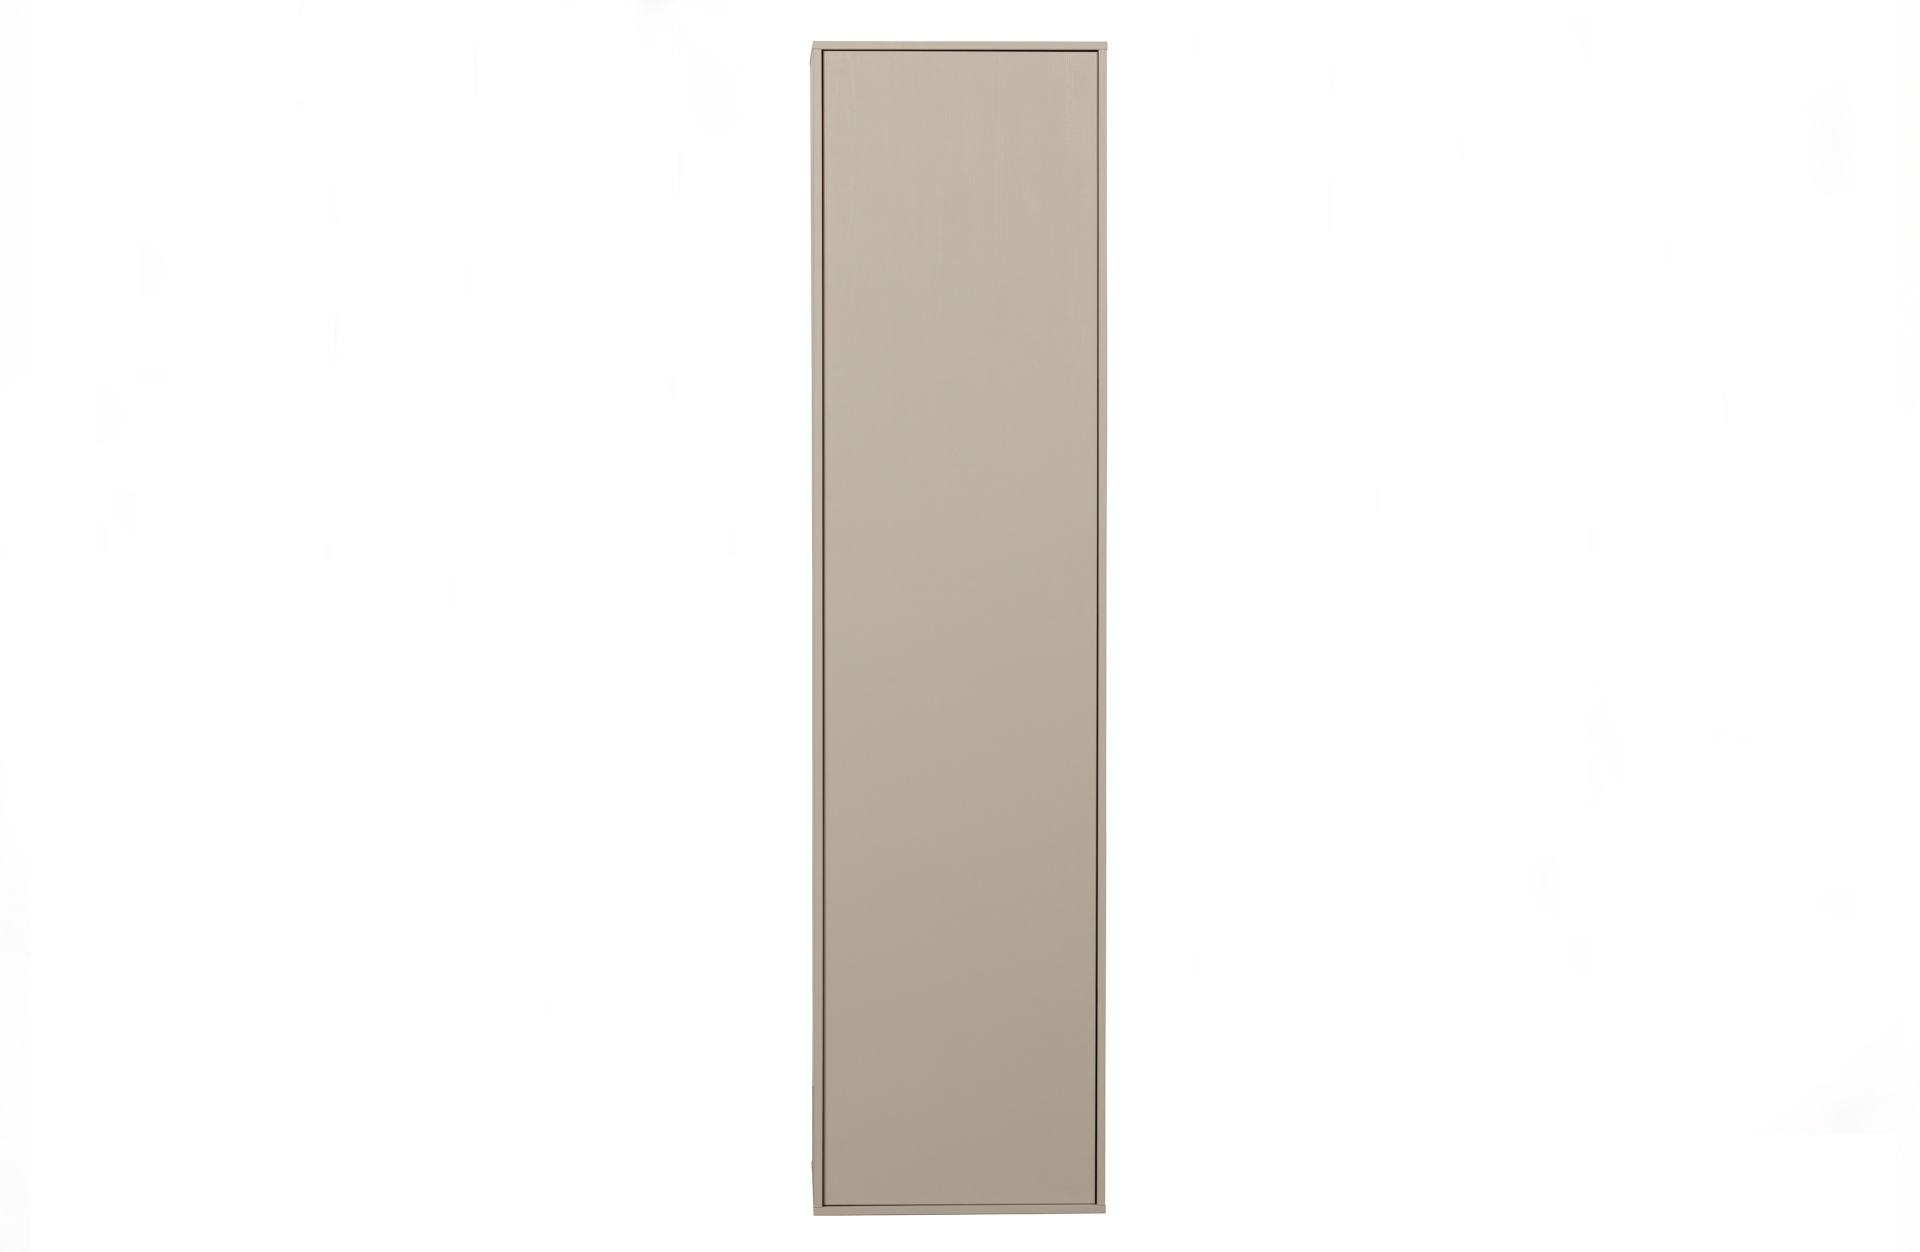 Der Modulschrank Daily Closet überzeugt mit seinem modernen Design. Gefertigt wurde er aus Kiefernholz, welches einen grauen Farbton besitzt. Der Schrank verfügt über eine Tür und hat eine Größe von 200x50 cm